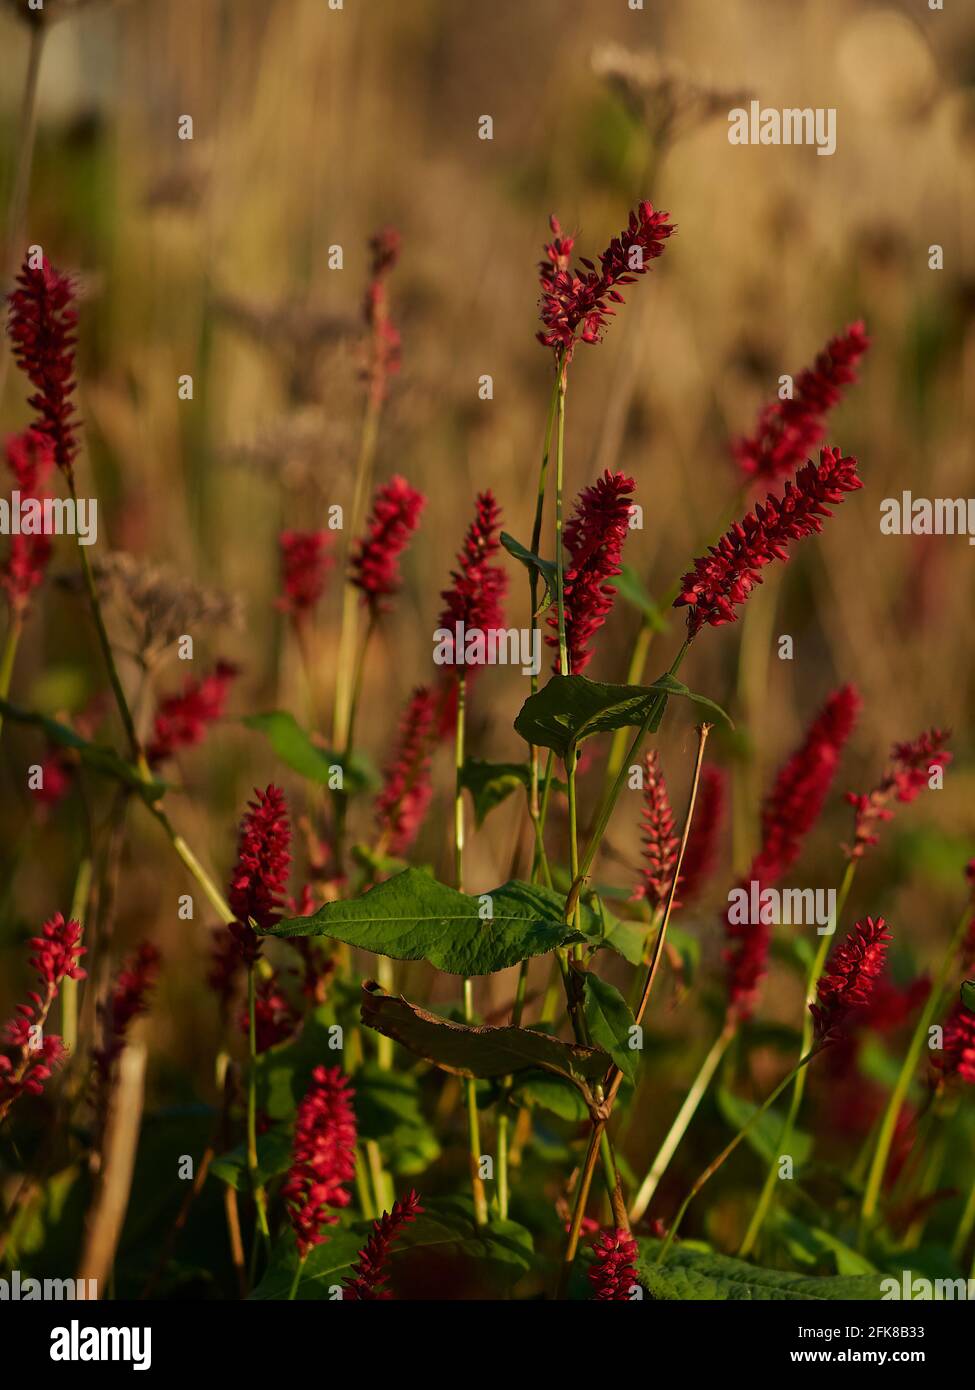 Eine herbstliche Nahaufnahme von kleinen, roten Blütenklumpen auf hohen Stielen in flacher Schärfe und in warmem, weichem, goldenem Licht und mit einem Hintergrund von Gräsern. Stockfoto